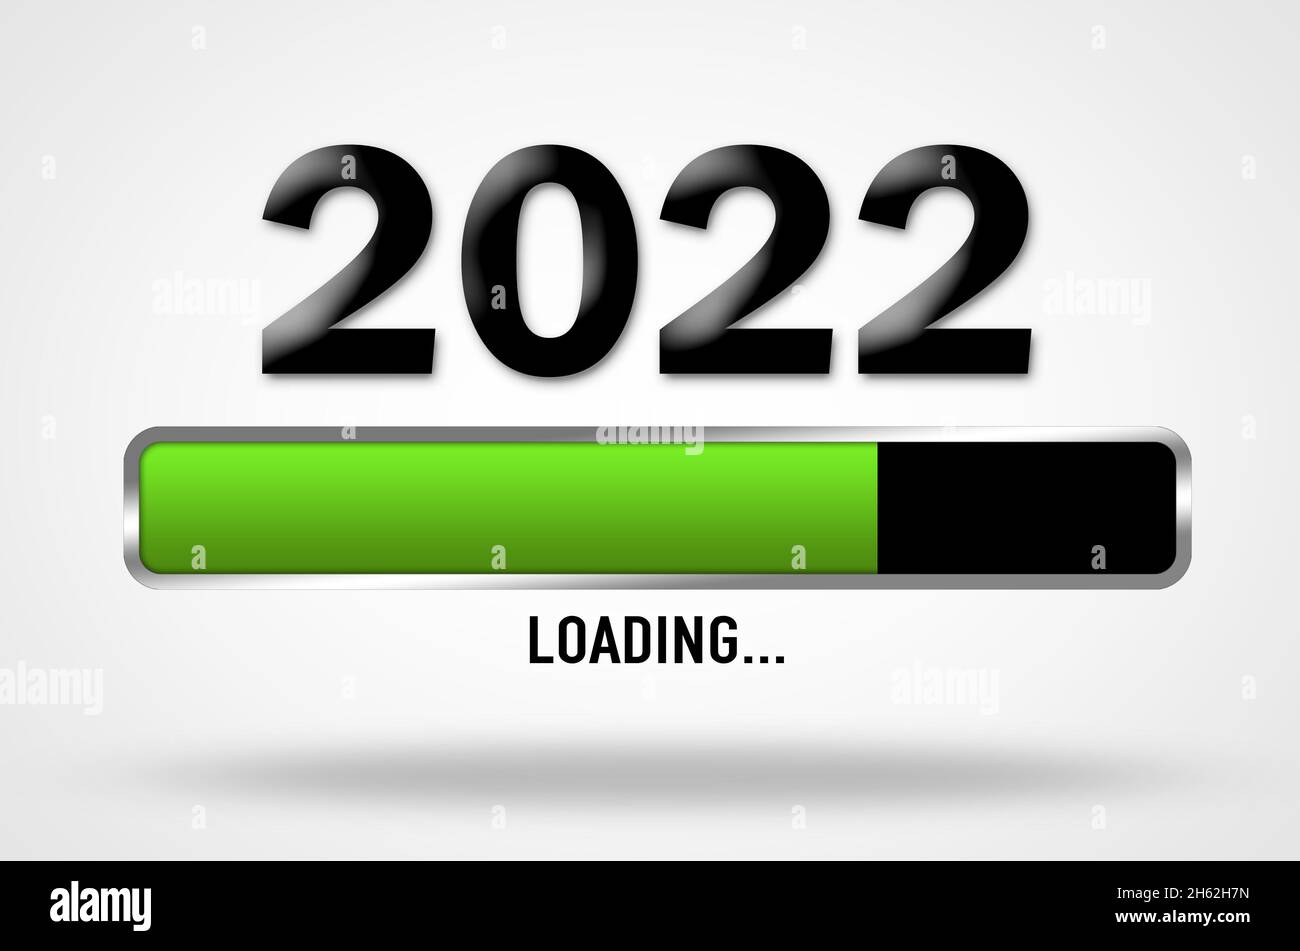 Ilustración de la barra de carga para el nuevo año de 2022 Foto de stock